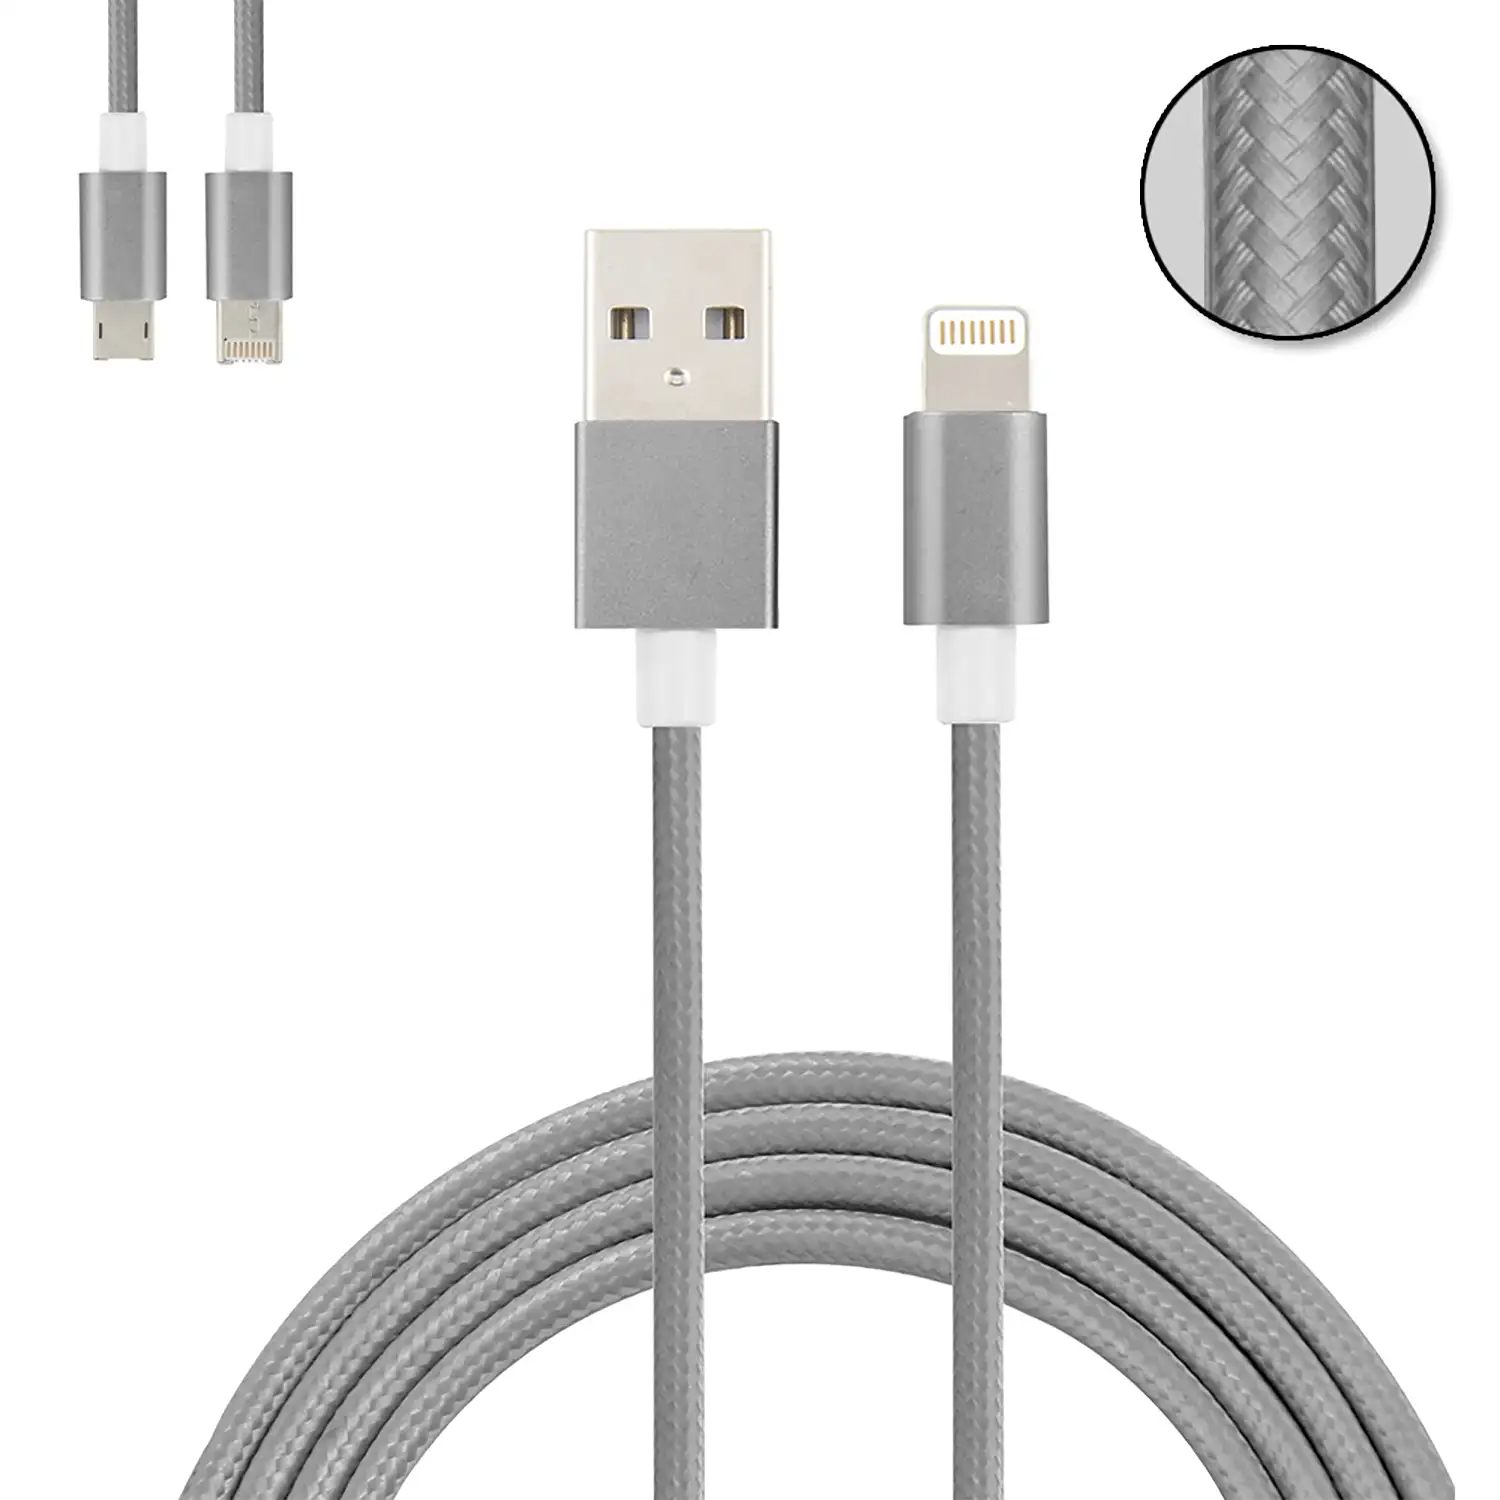 Cable de carga y datos 2 en 1 para iOS y Android: conexión Lightning y Micro USB.